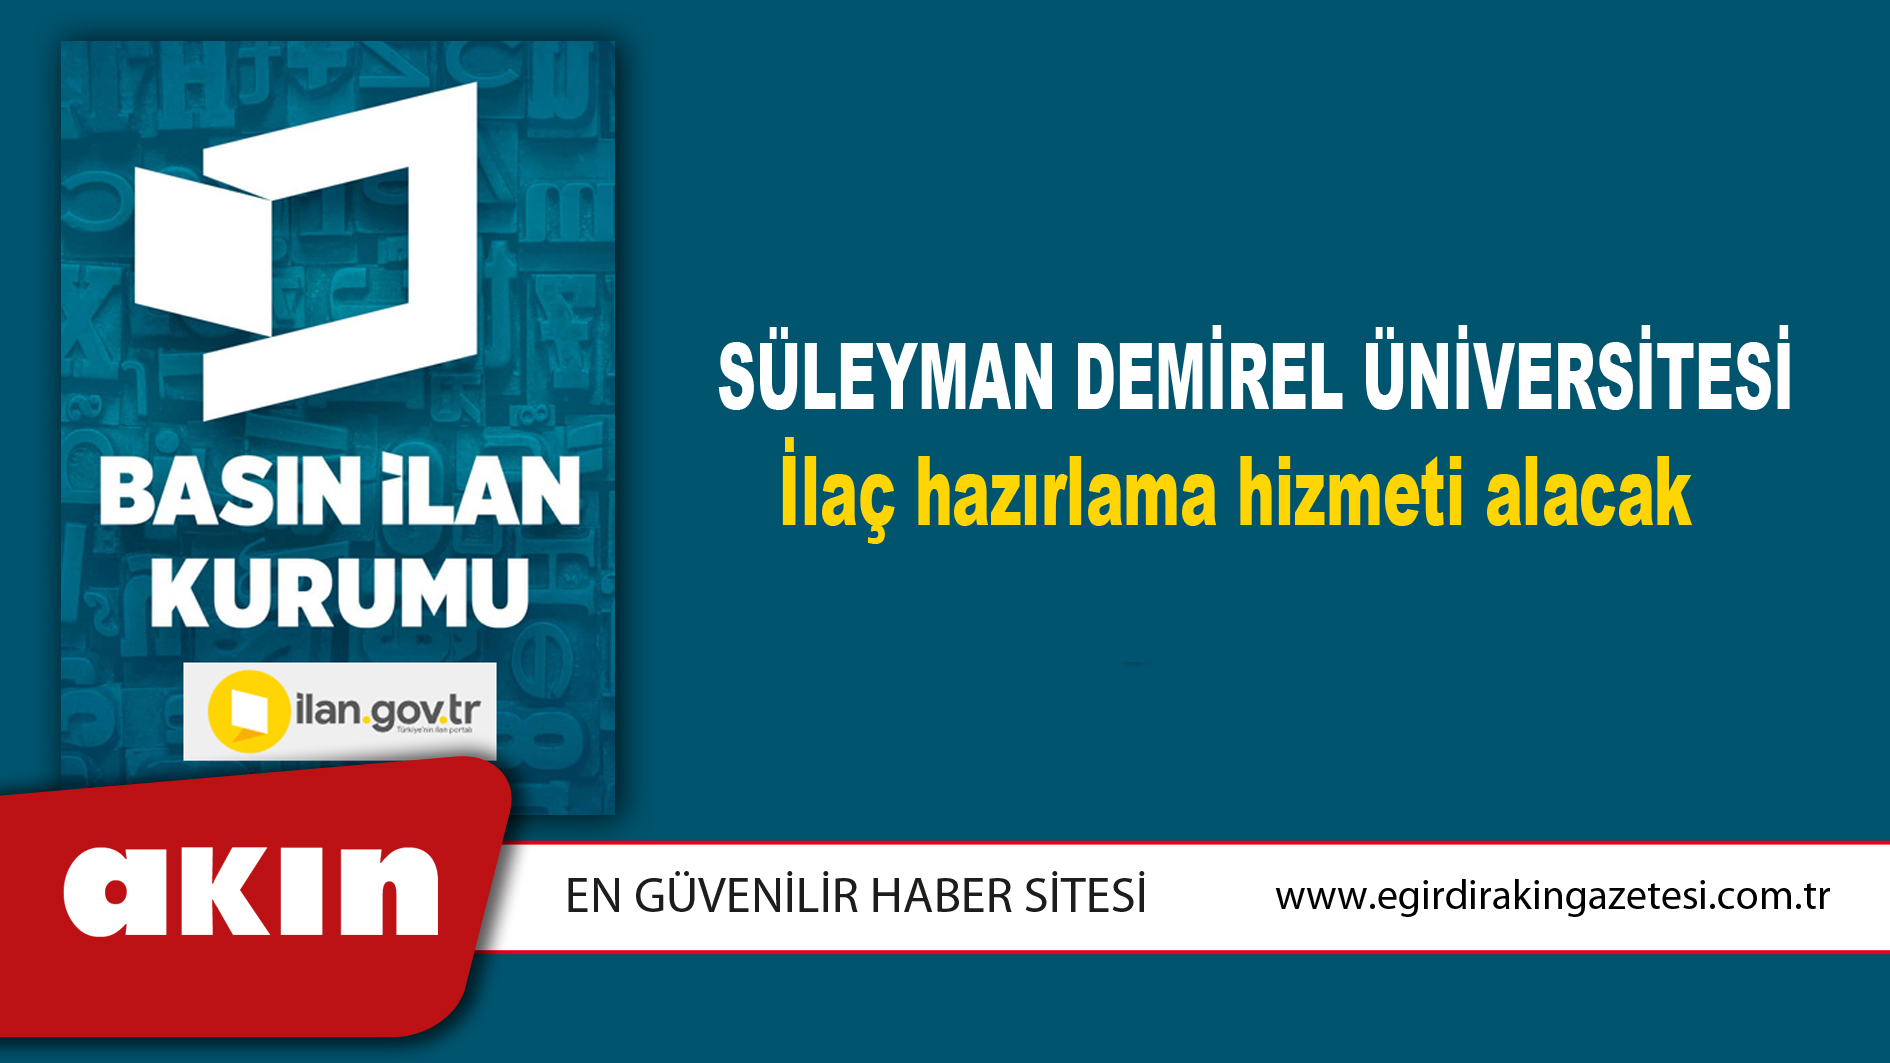 Süleyman Demirel Üniversitesi İlaç hazırlama hizmeti alacak